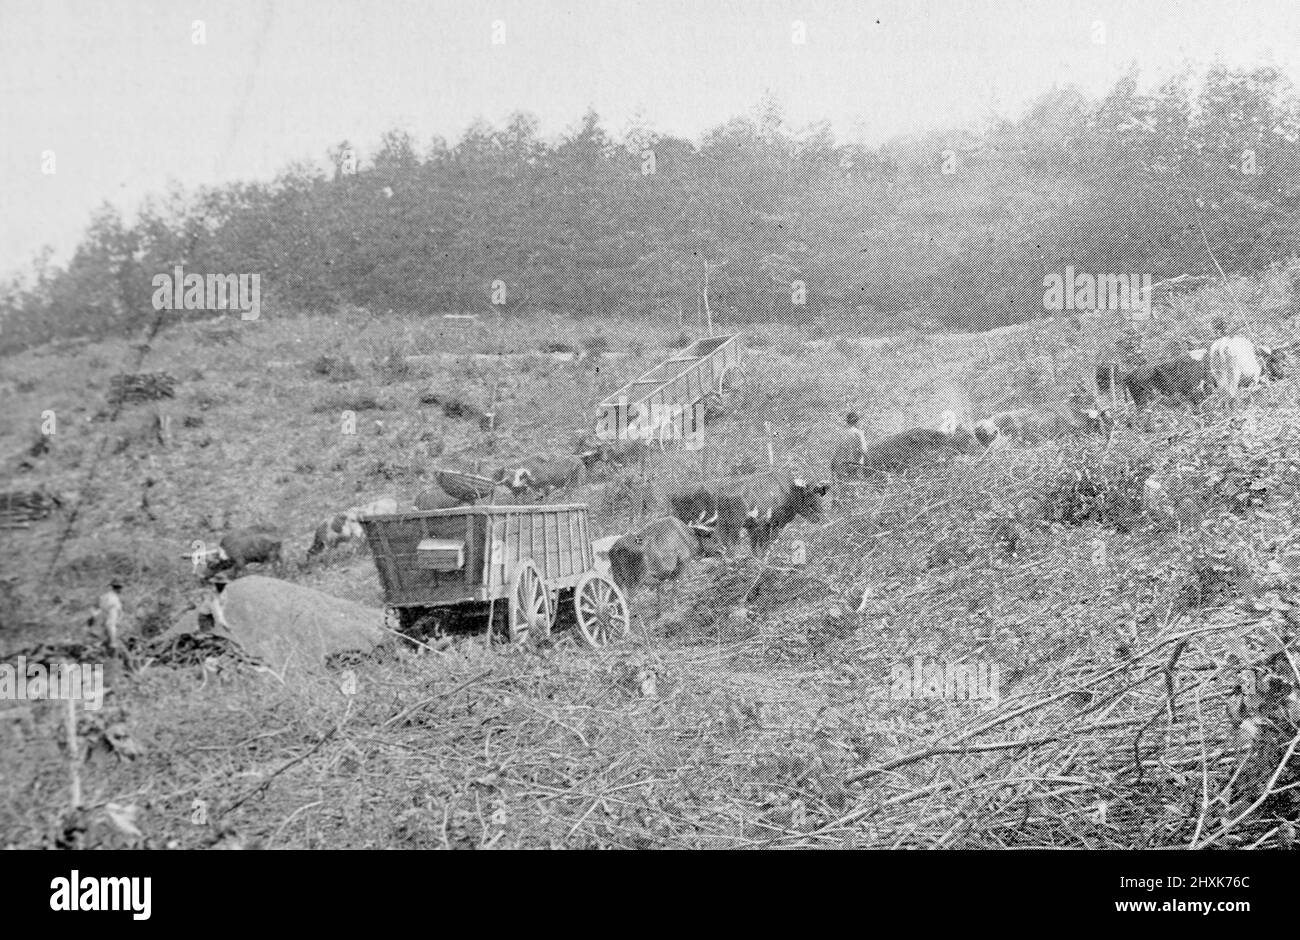 Fabricación de carbón para un alto horno en el sur de Ohio, EE.UU. Fotografía en blanco y negro tomada alrededor de 1890s Foto de stock